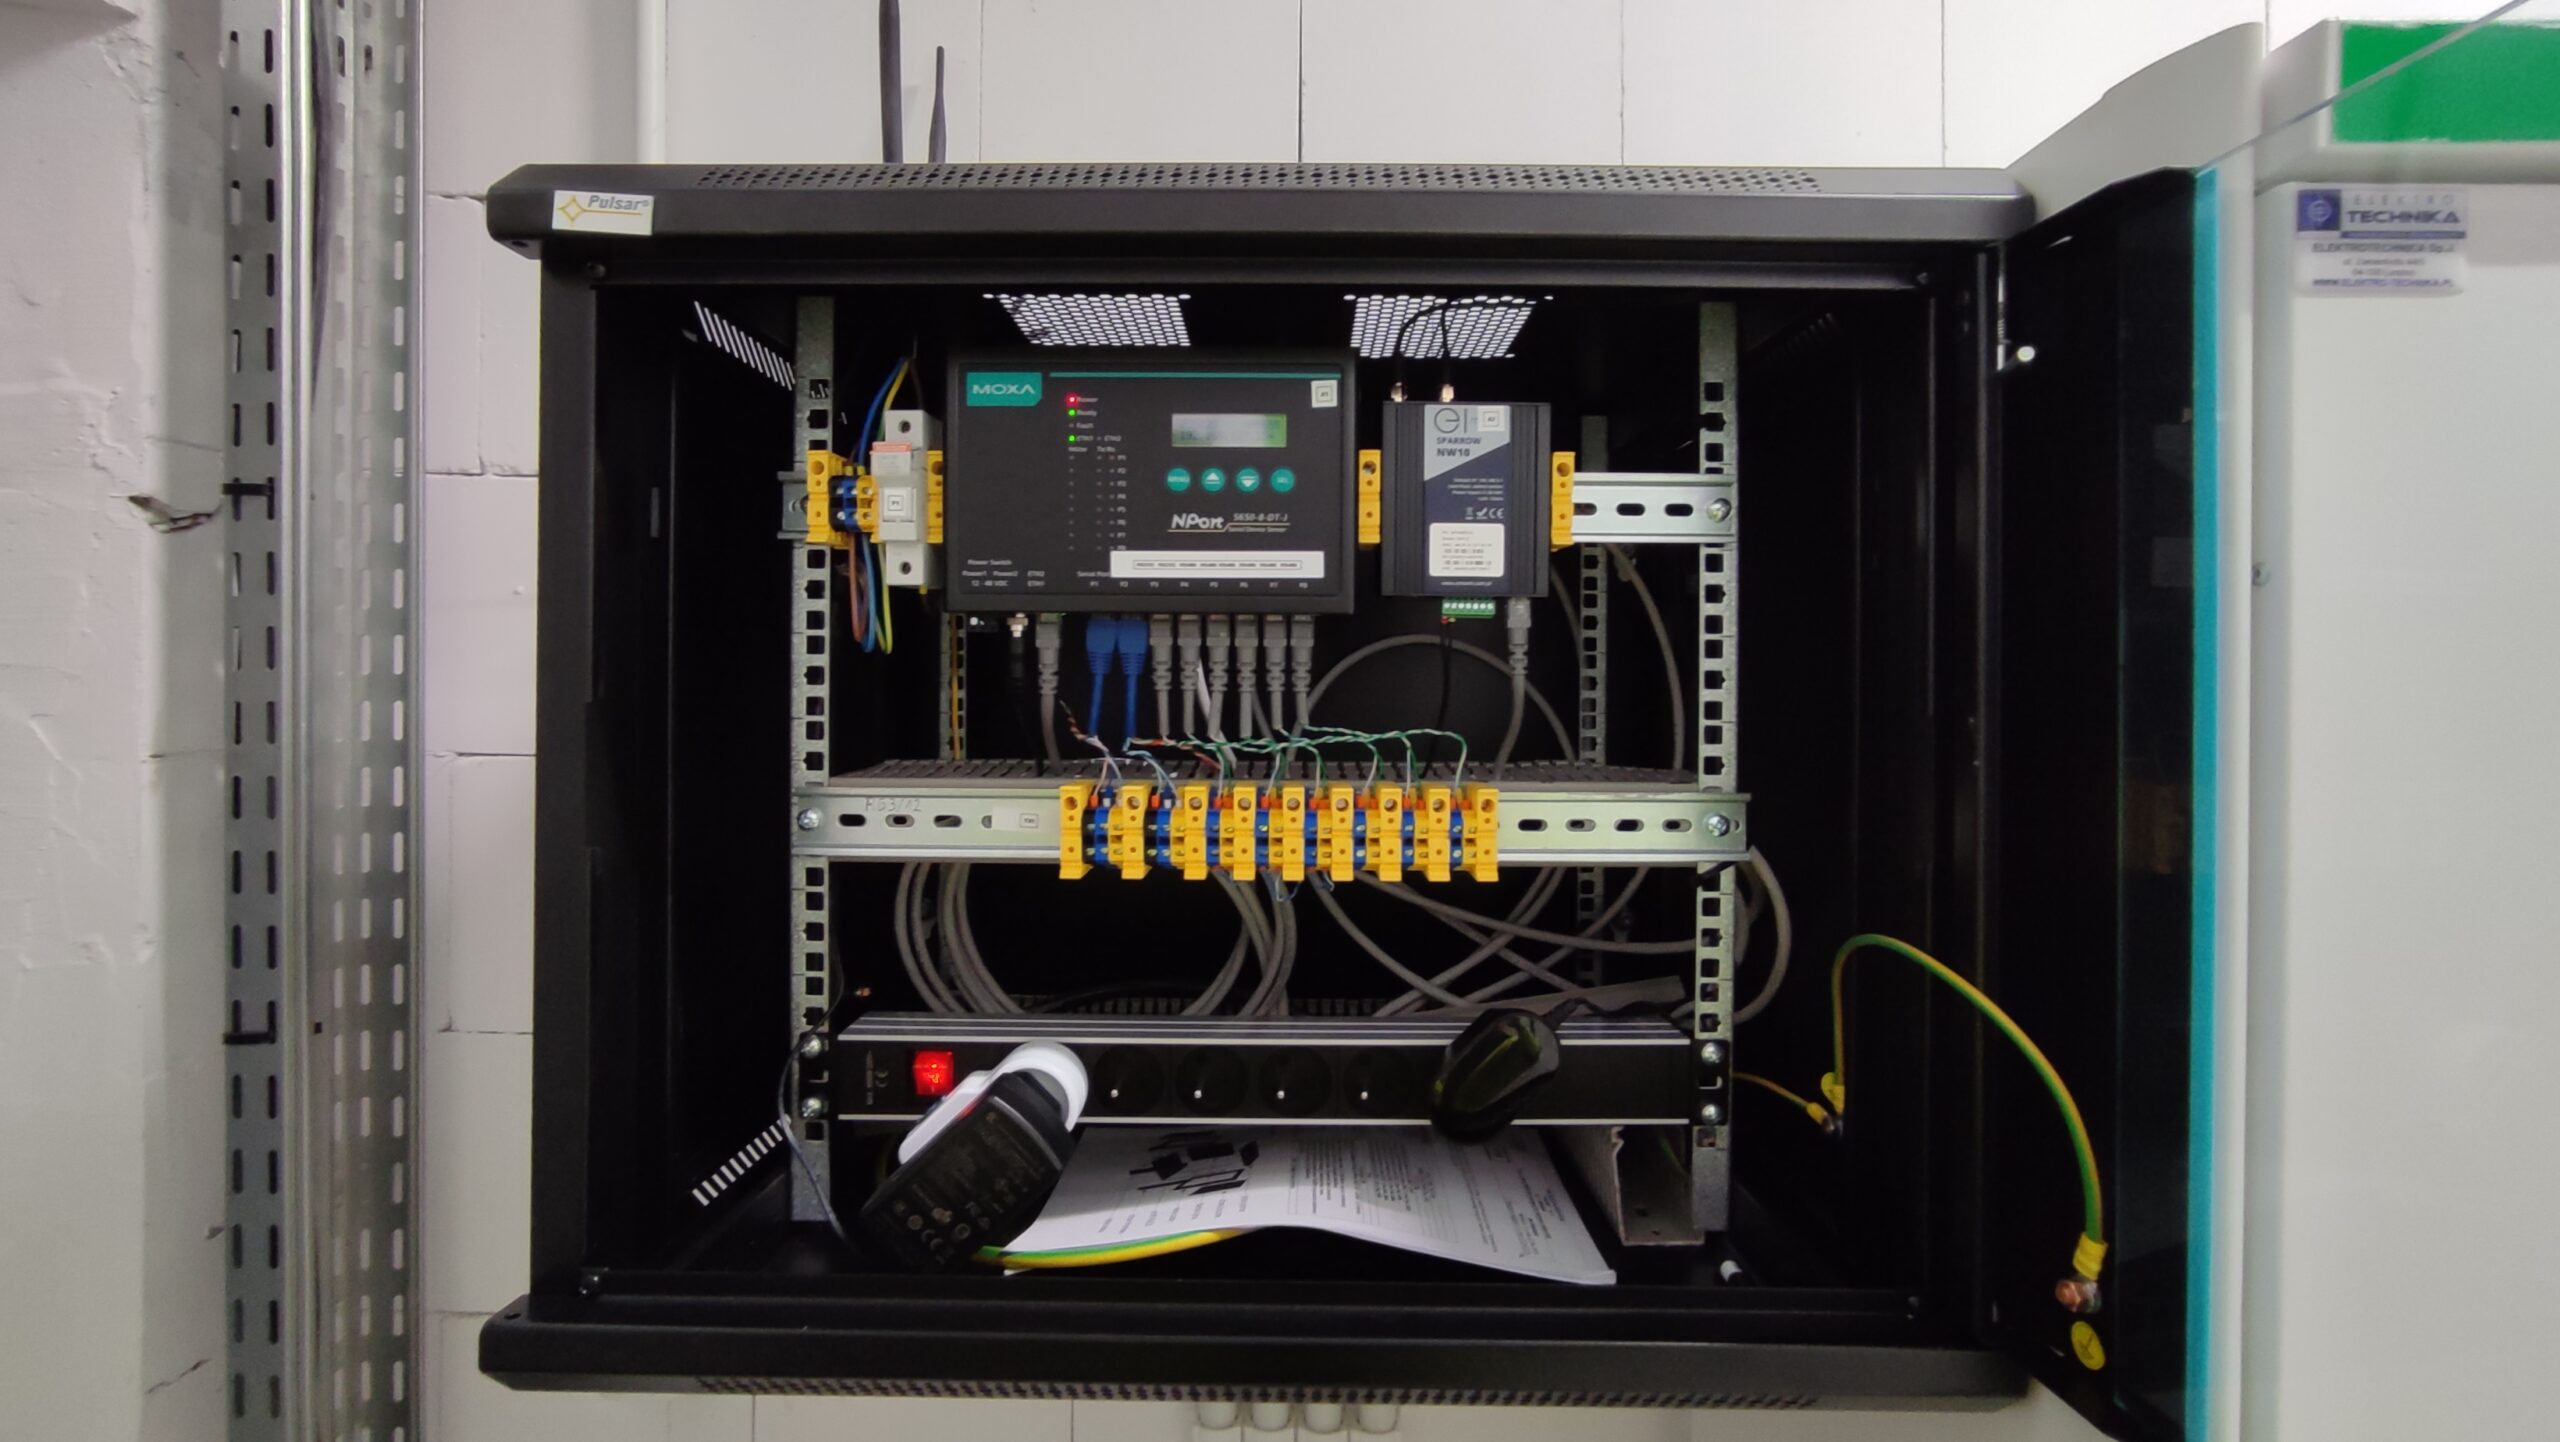 Montaż szafki koncentratora danych zdalnego odczytu liczników energii elektrycznej – Koszalin